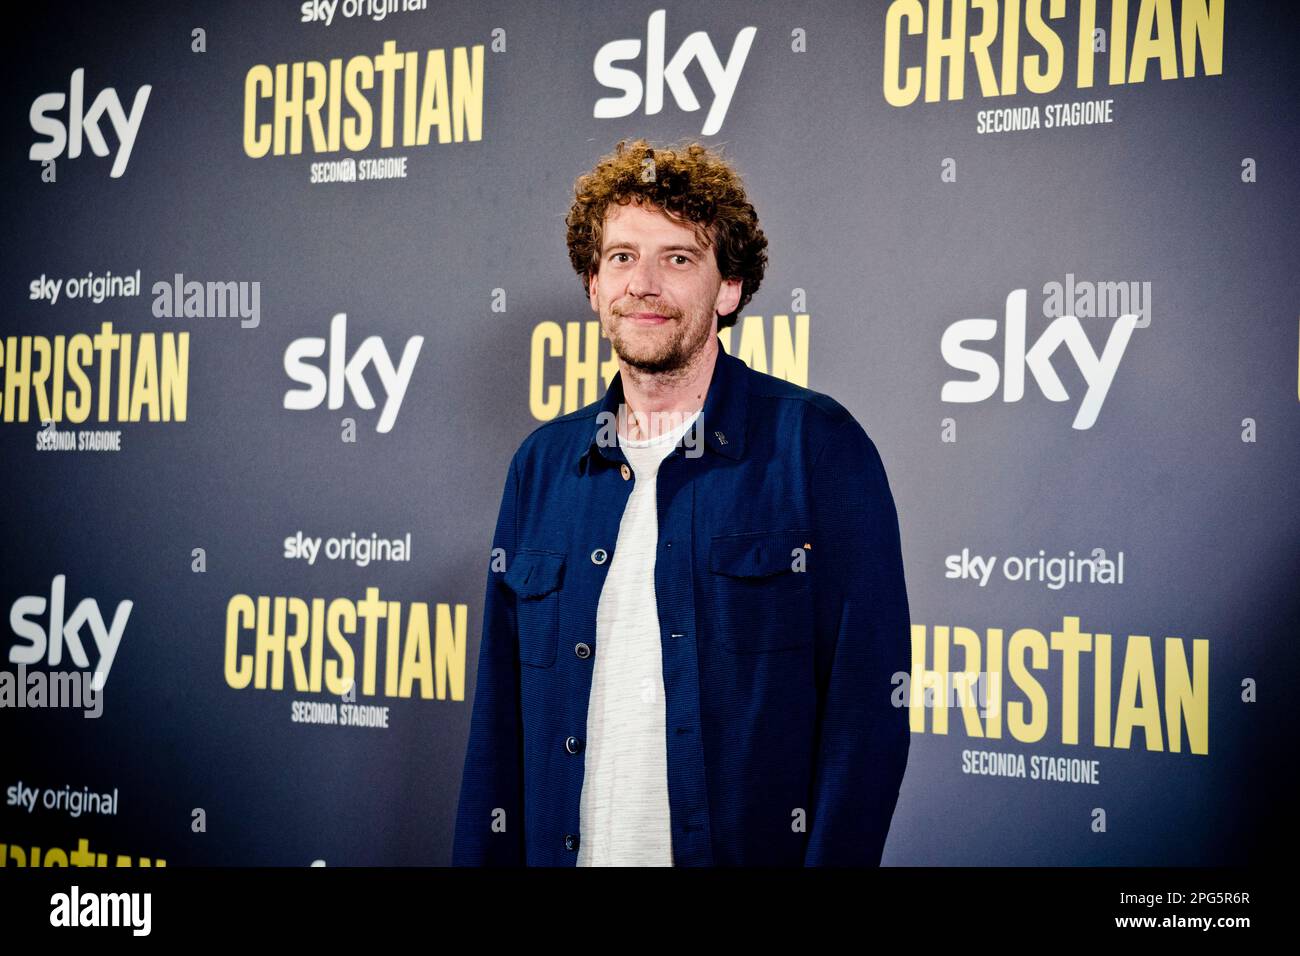 Rome, Italy, 20th March 2023, Maurizio Lastrico attends the premiere of 'Christian - seconda stagione' at Cinema Barberini (Photo credits: Giovanna On Stock Photo